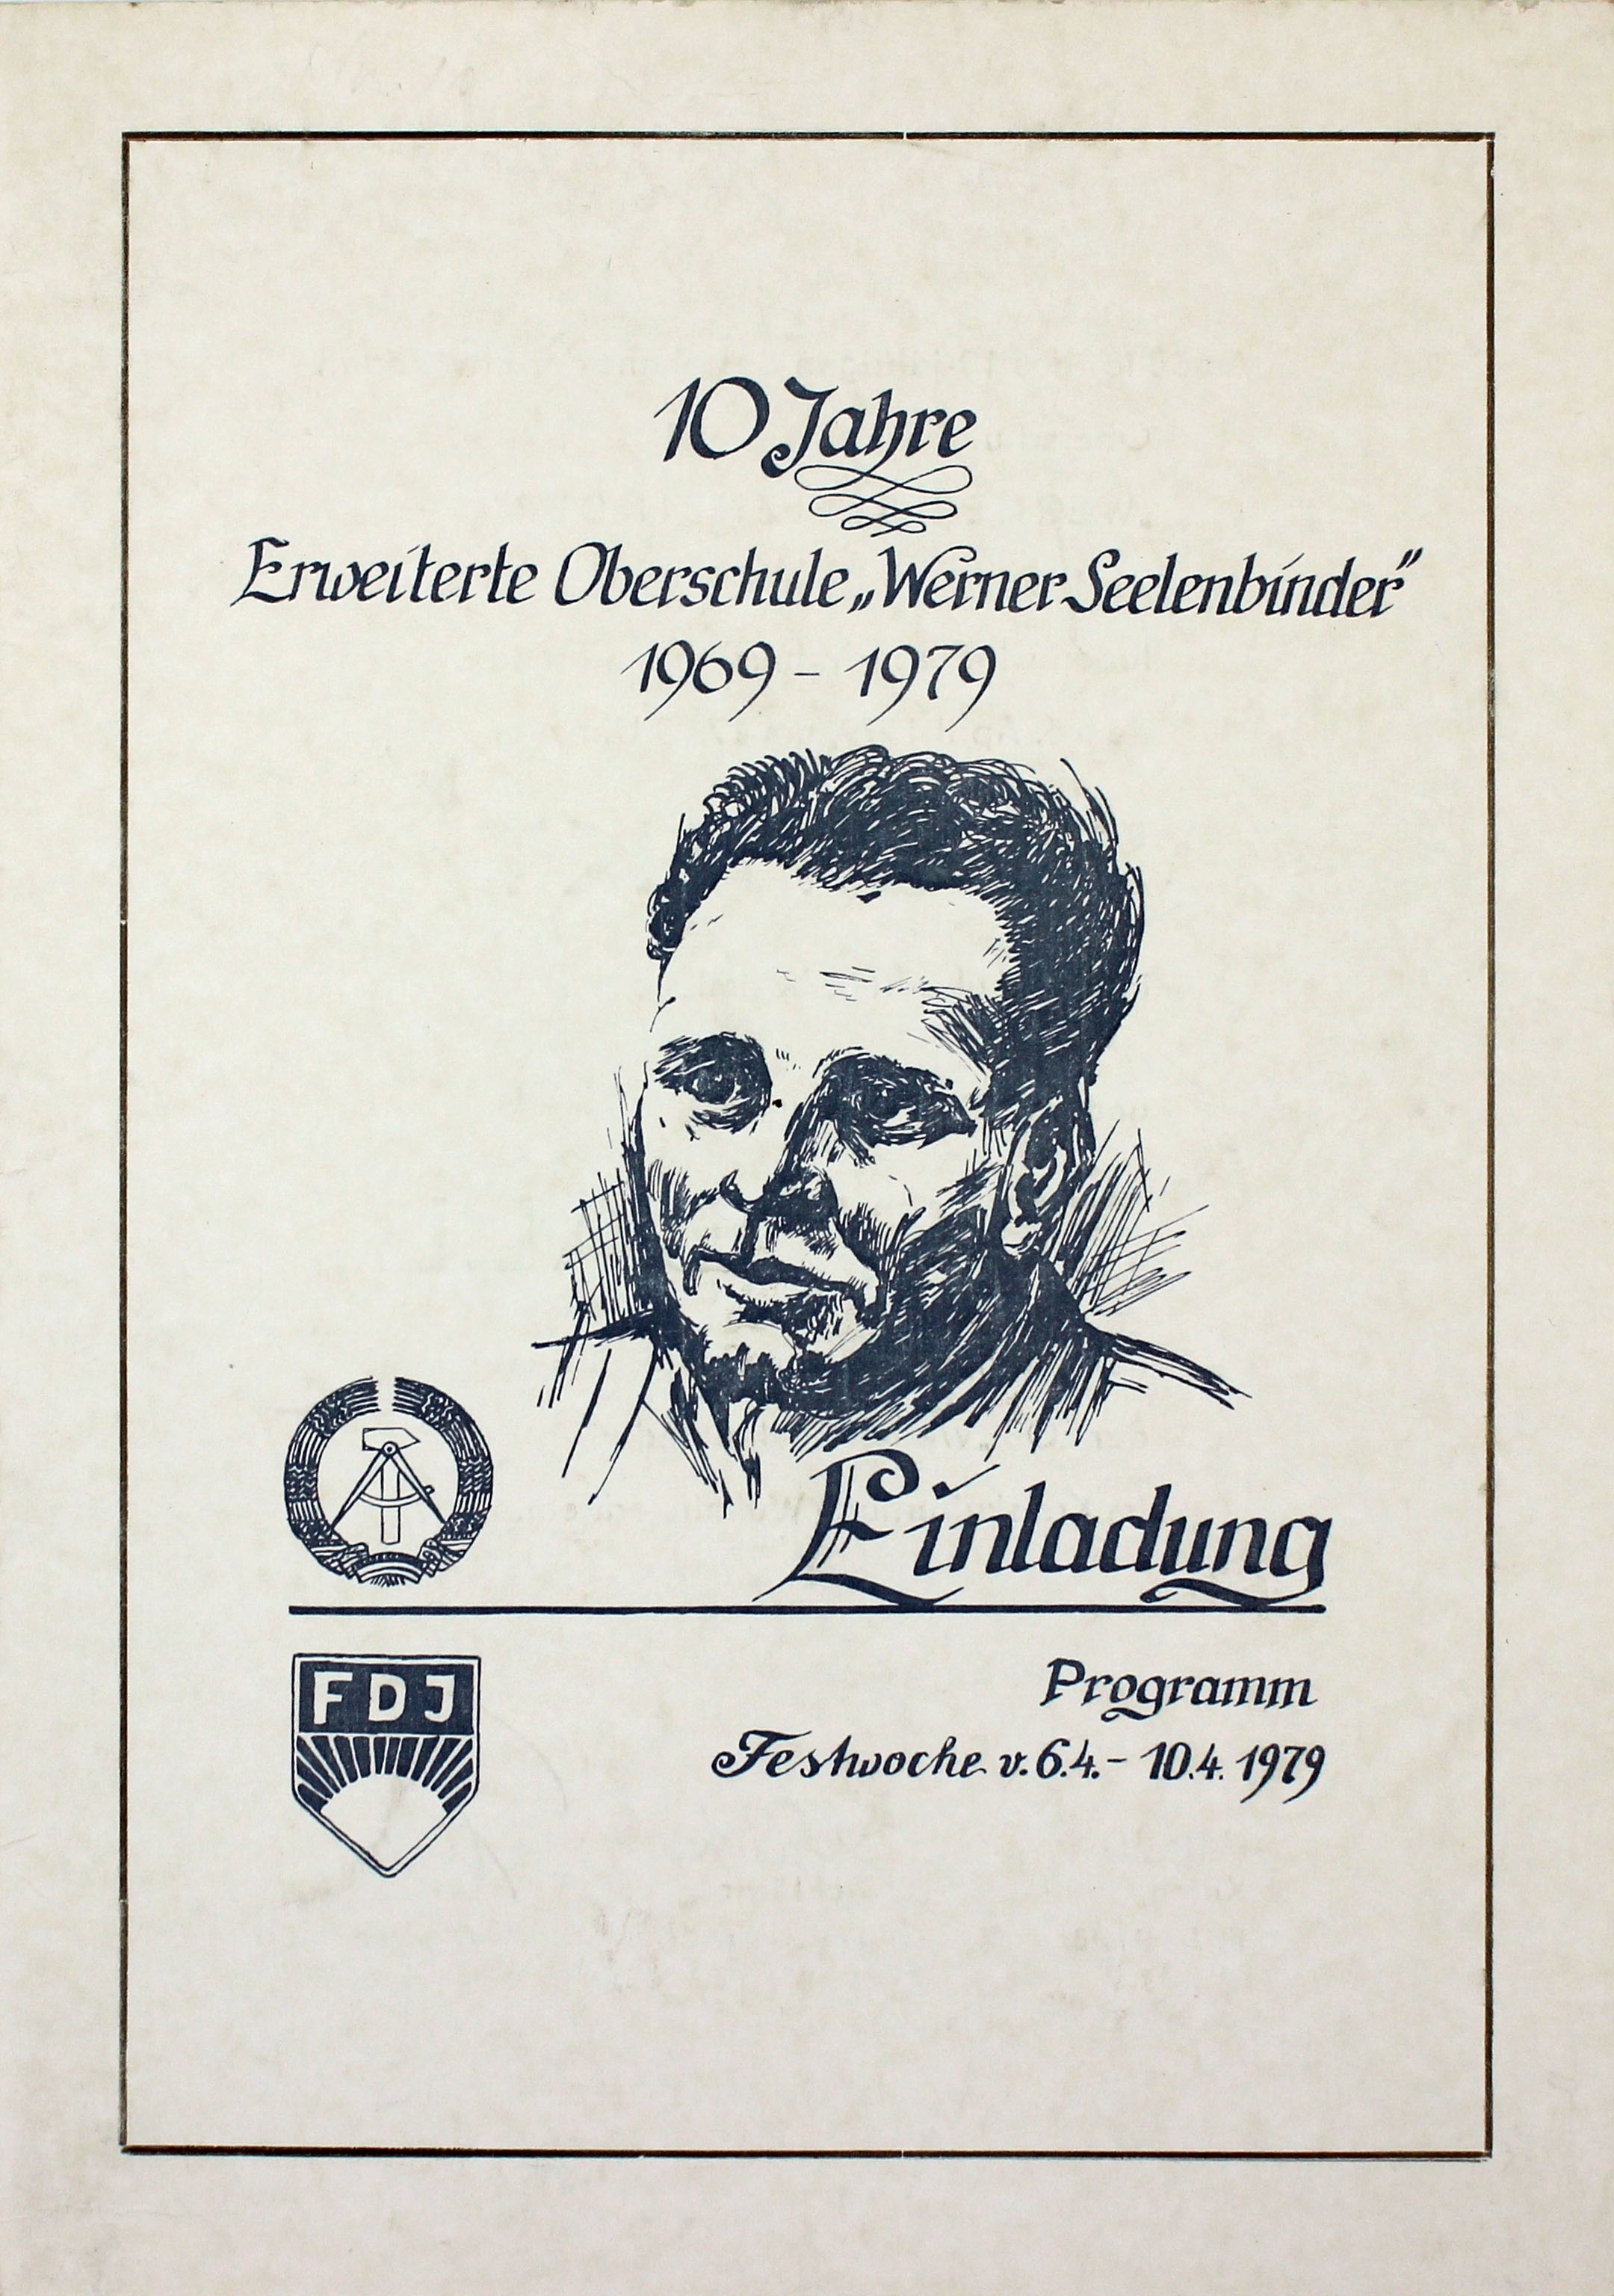 Einladung mit Programm zum 10-jährigen Jubiläum der erweiterten Oberschule "Werner Seelbinder", April 1979 (Museum Wolmirstedt RR-F)